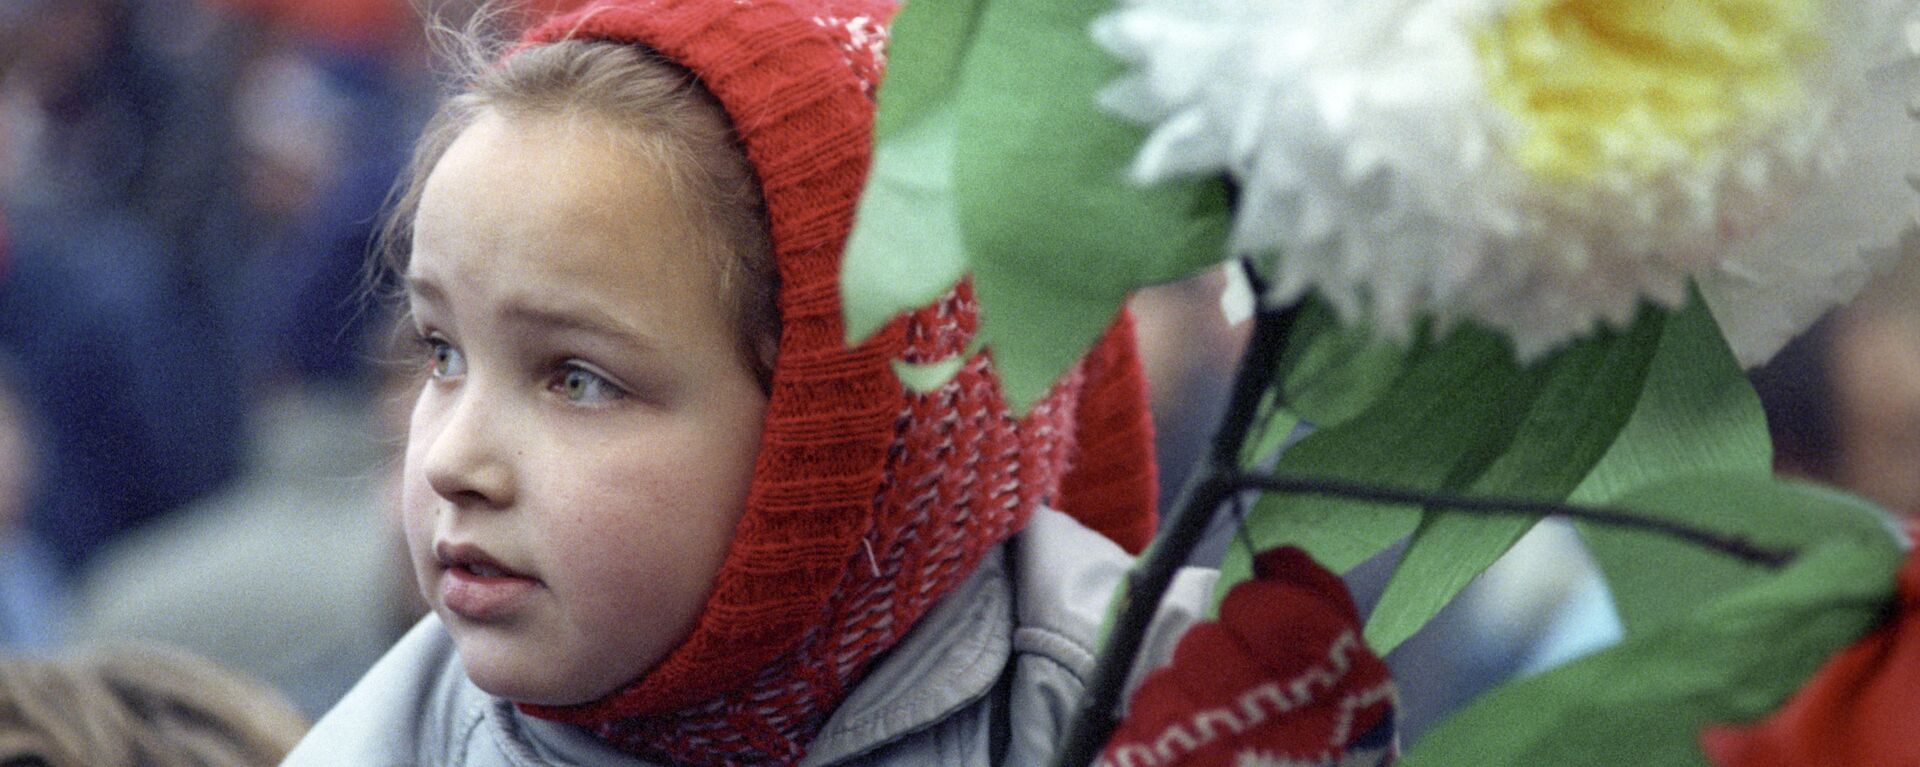 Девочка с цветами в колонне демонстрации трудящихся на Красной площади в день празднования 72-ой годовщины Великой Октябрьской социалистической революции, 1989 год - Sputnik Молдова, 1920, 06.02.2021